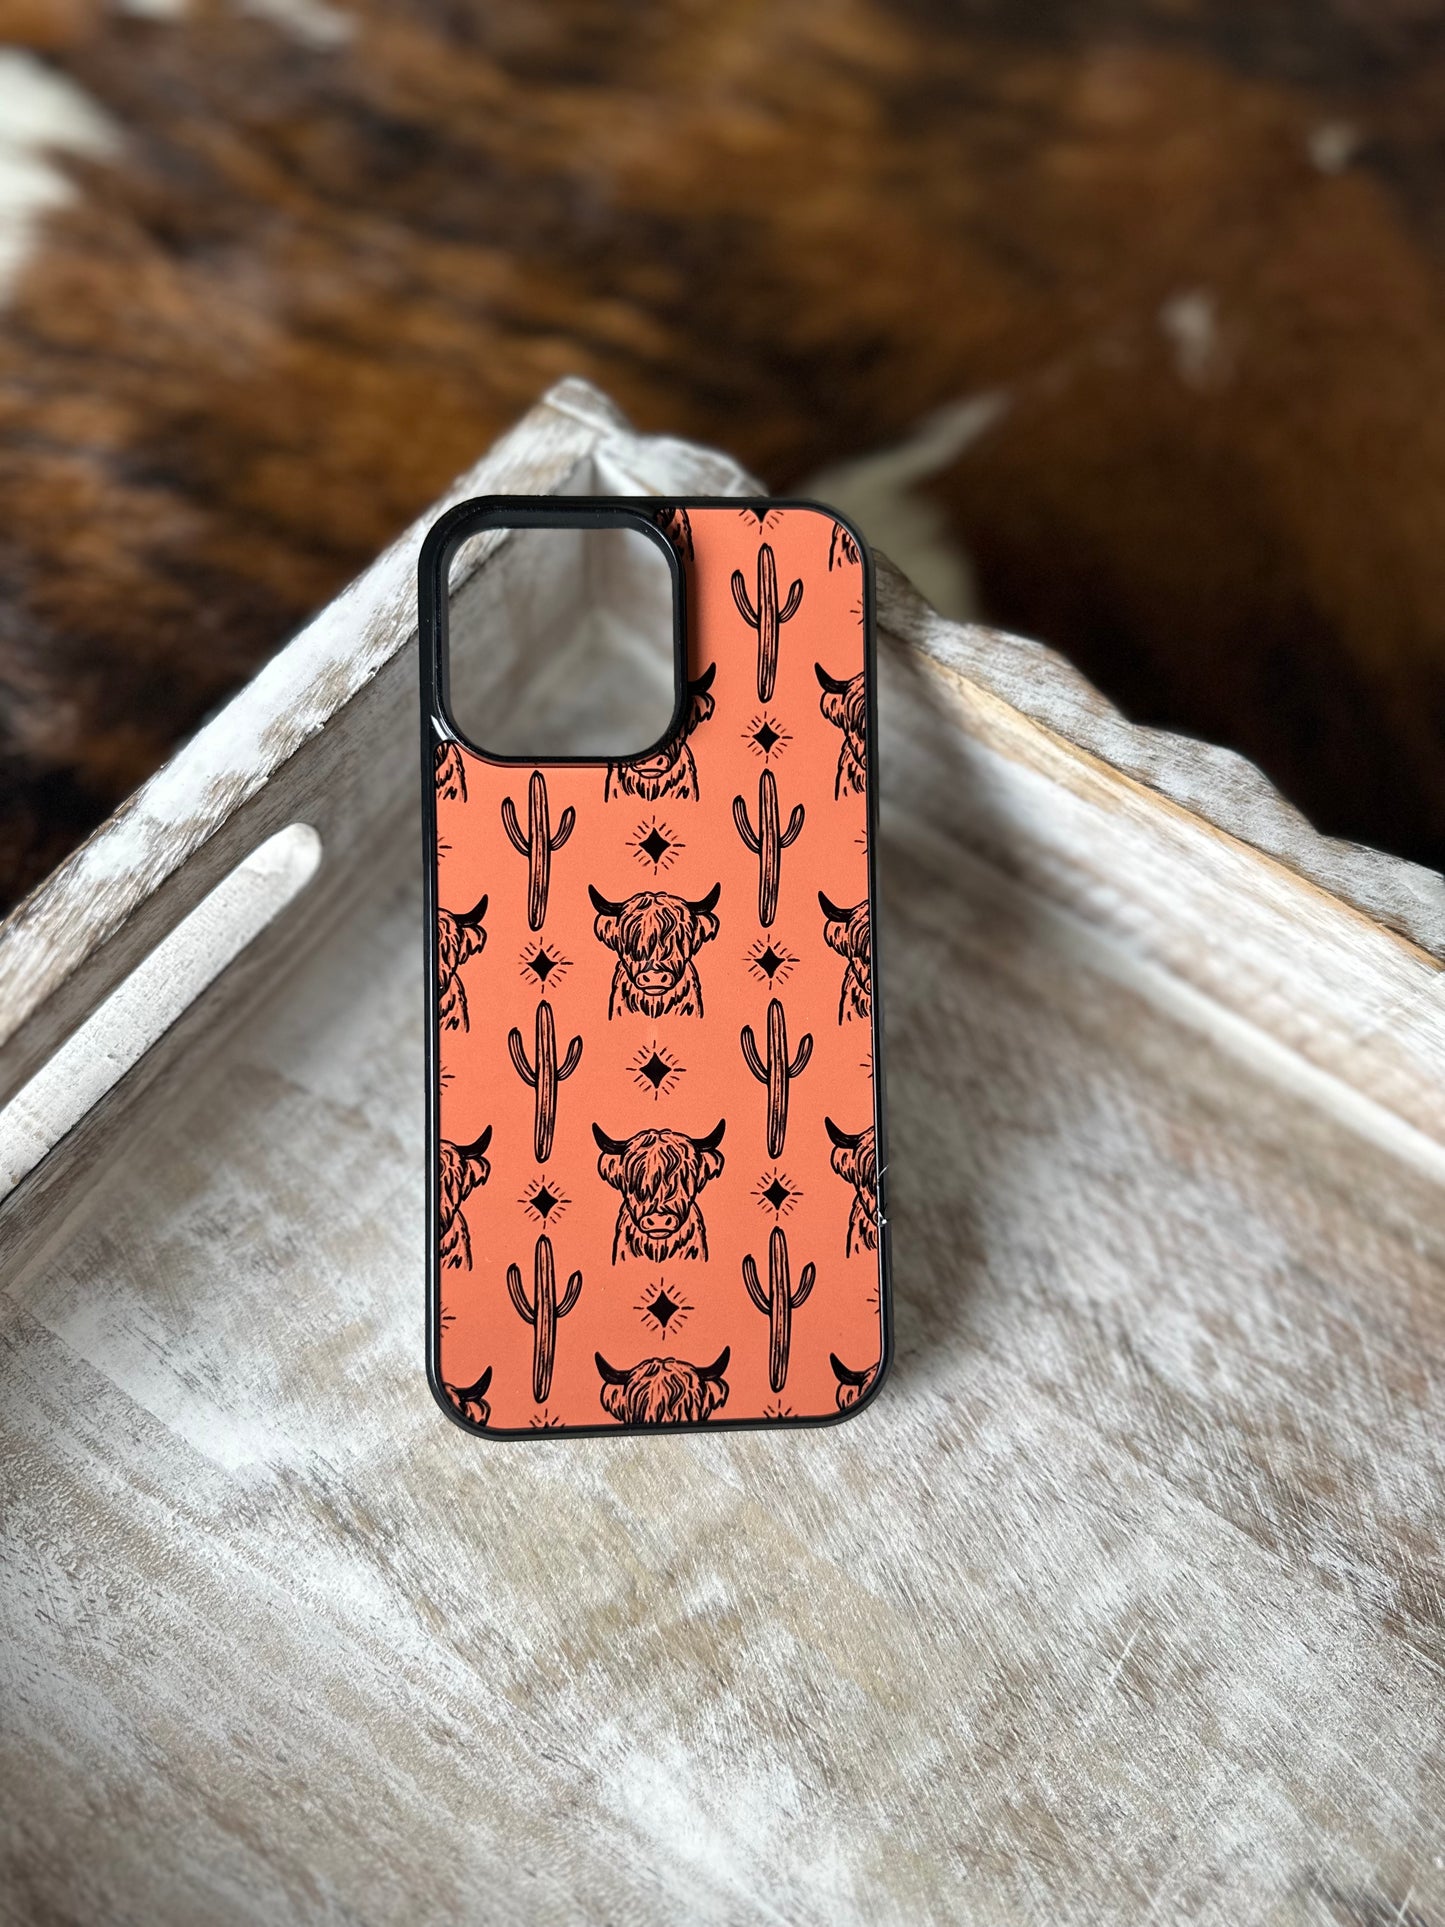 Burnt orange highland cow phone case